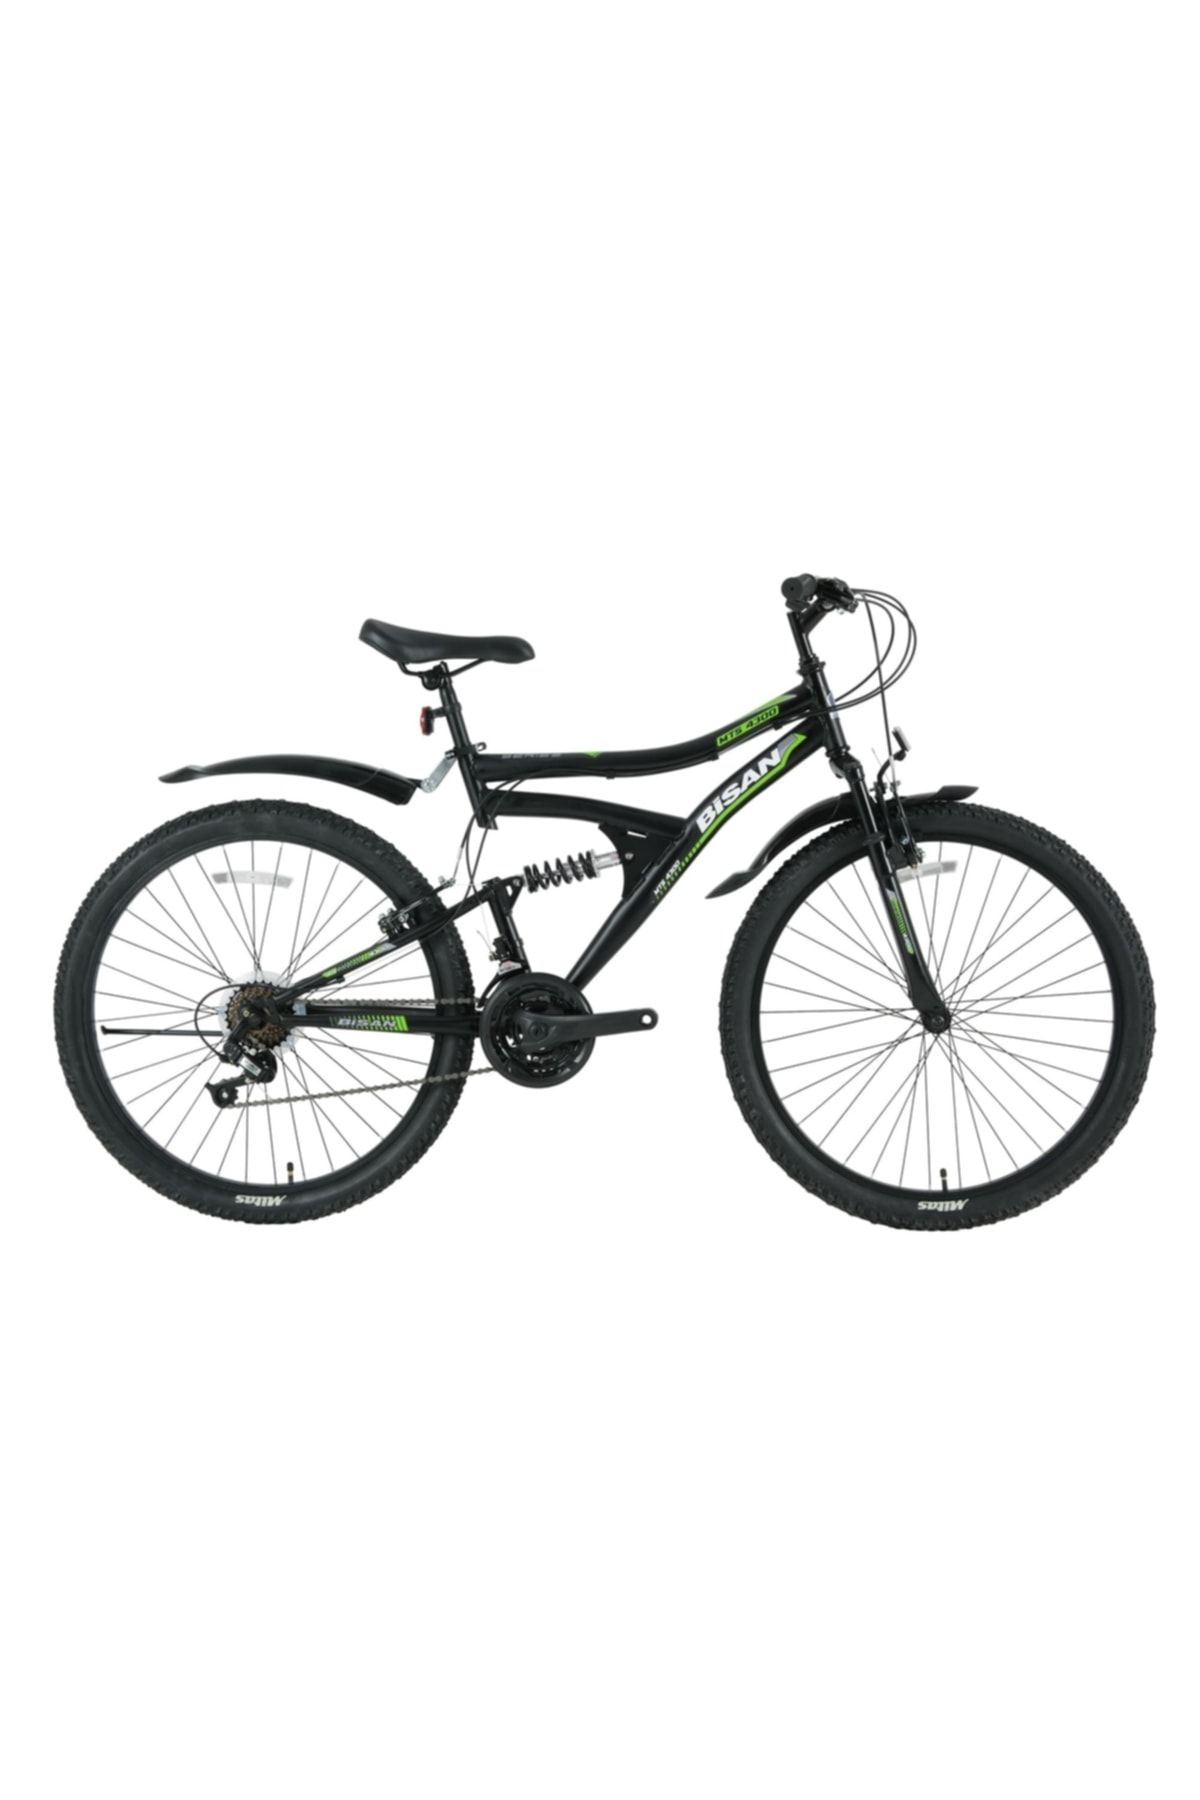 Bisan Mts 4300 26 Jant 40 Cm ( 16 - 17 Kadro ) Bisiklet (mat Siyah - Yeşil )